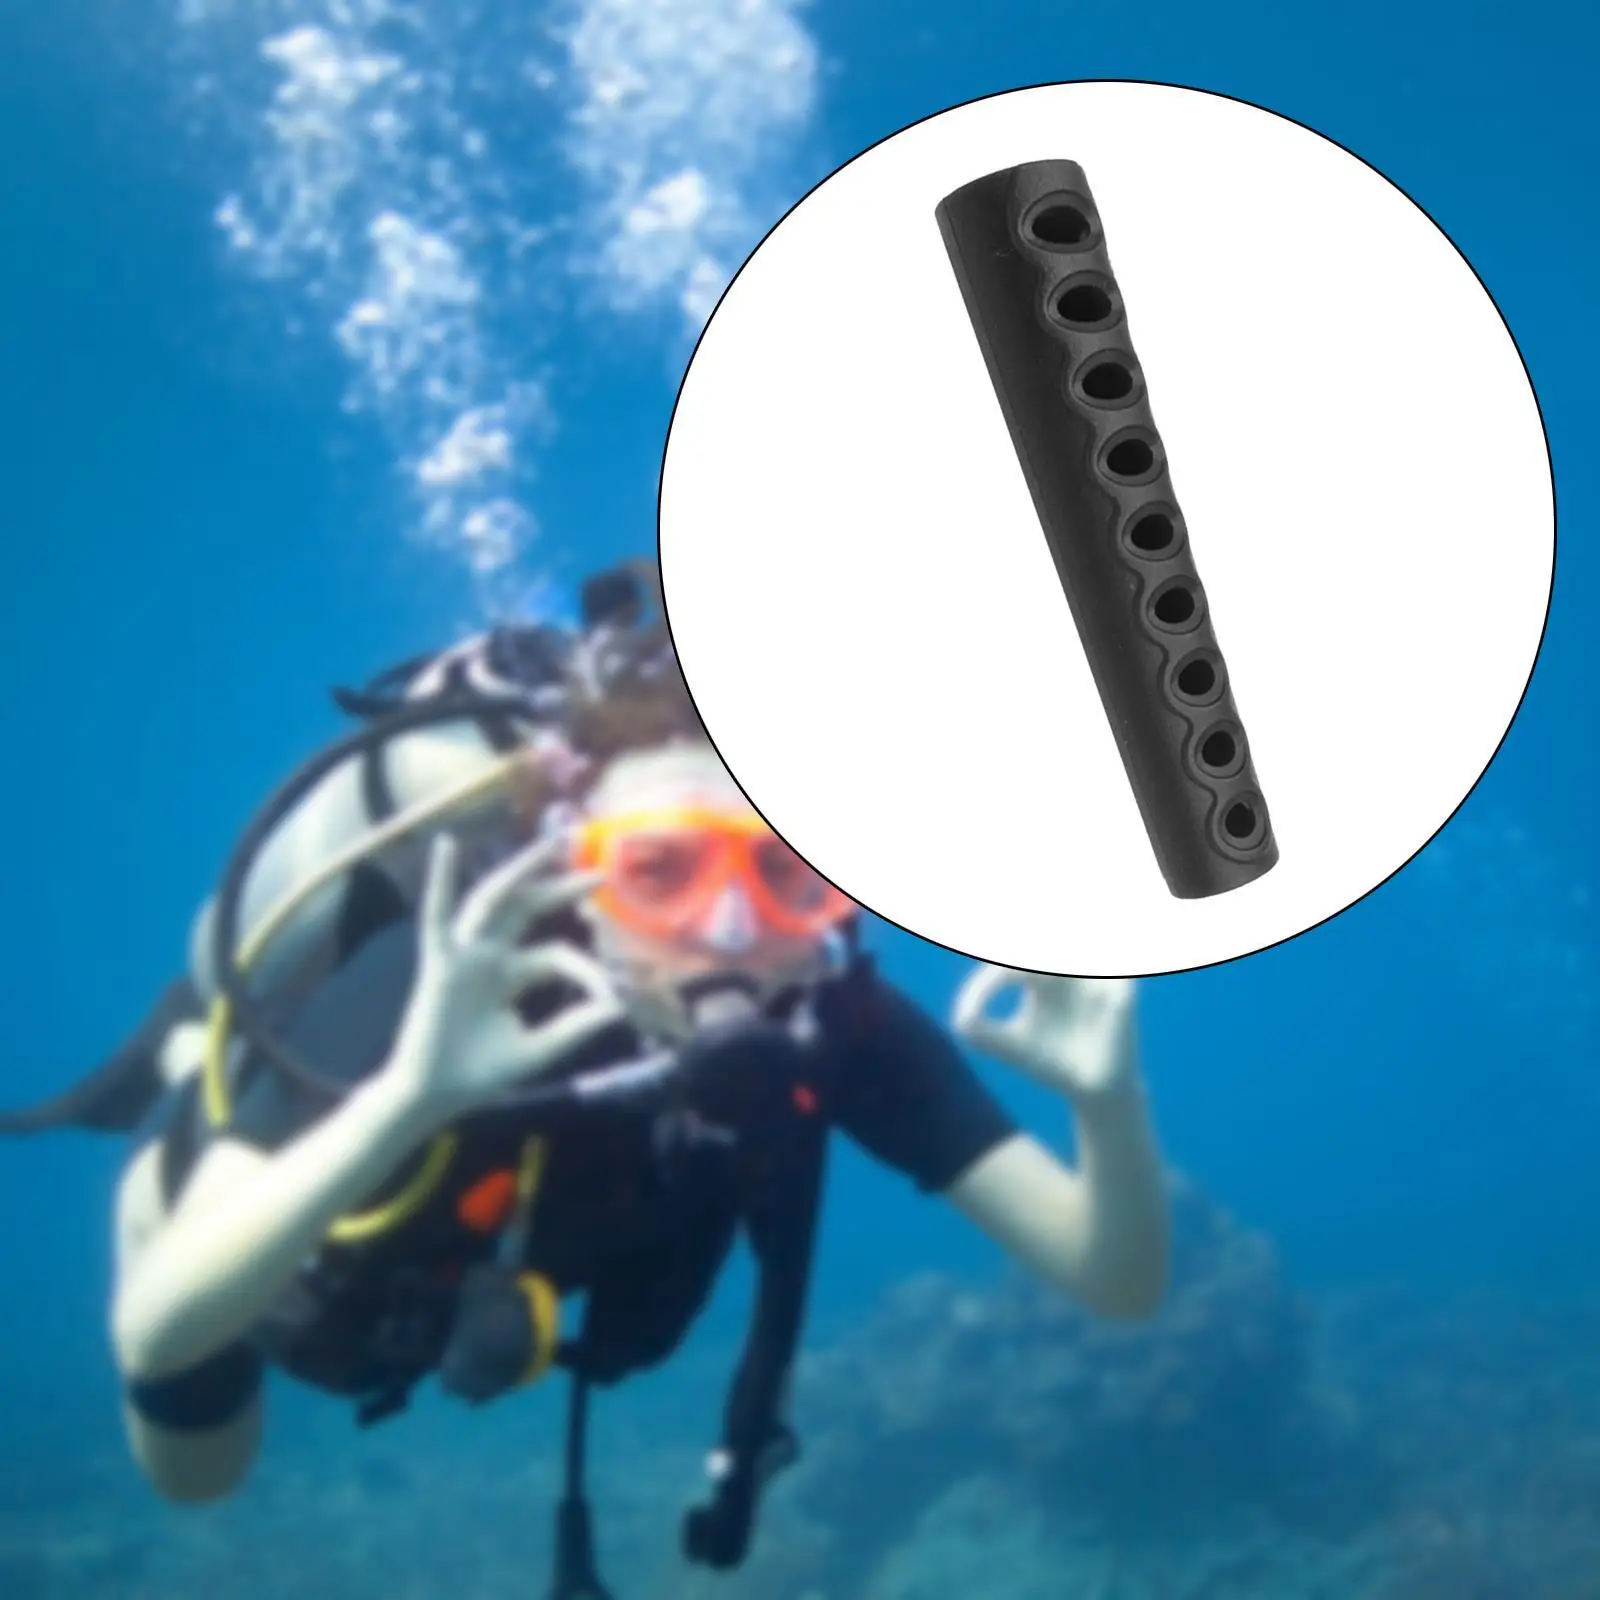 Аксессуар для защиты шланга для подводного плавания длиной 3,7 дюйма, прочный, легко устанавливаемый, Черный 1